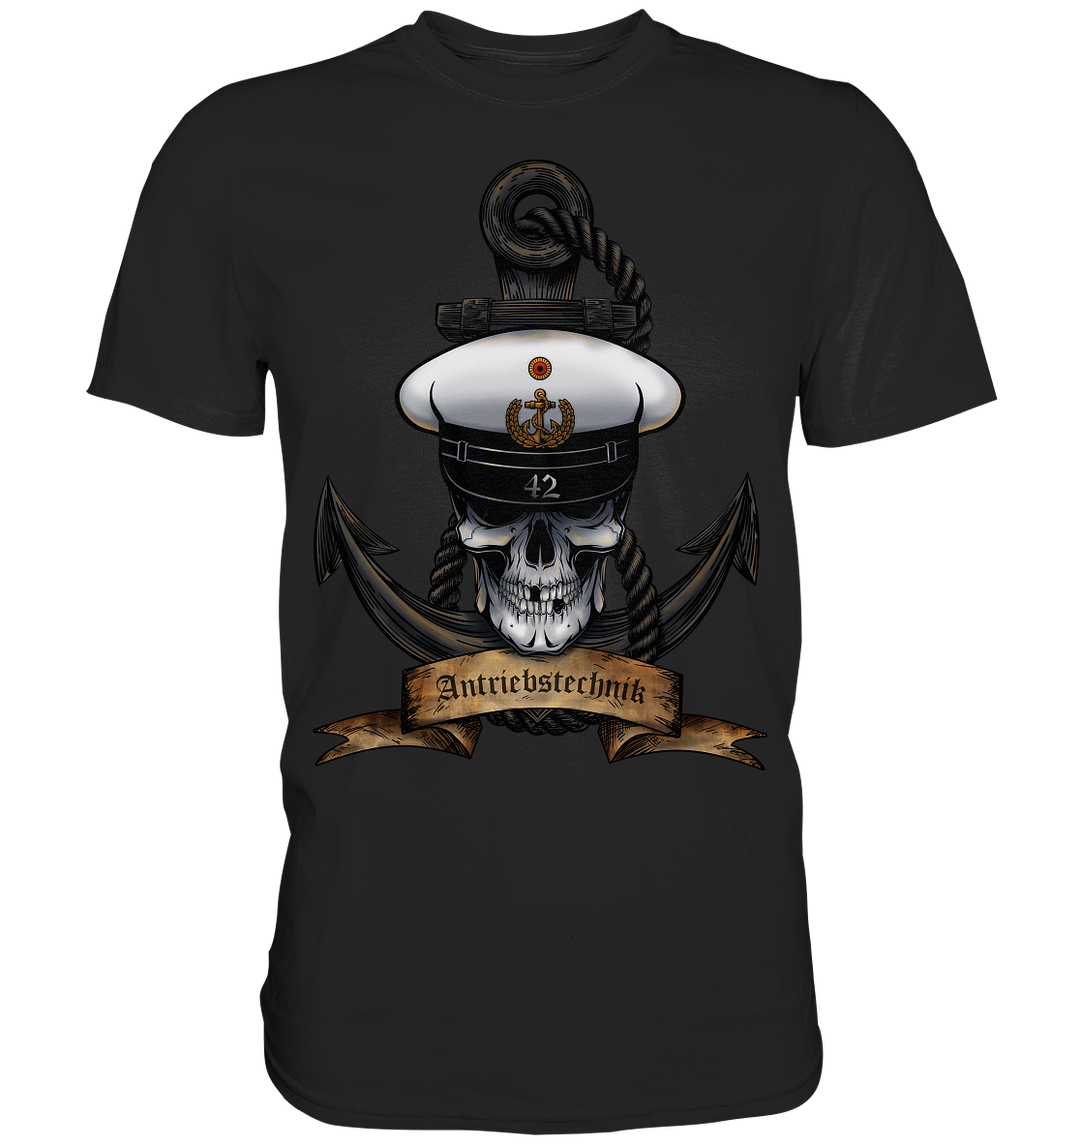 "Marine 42 - Antriebstechnik"  - Premium Shirt